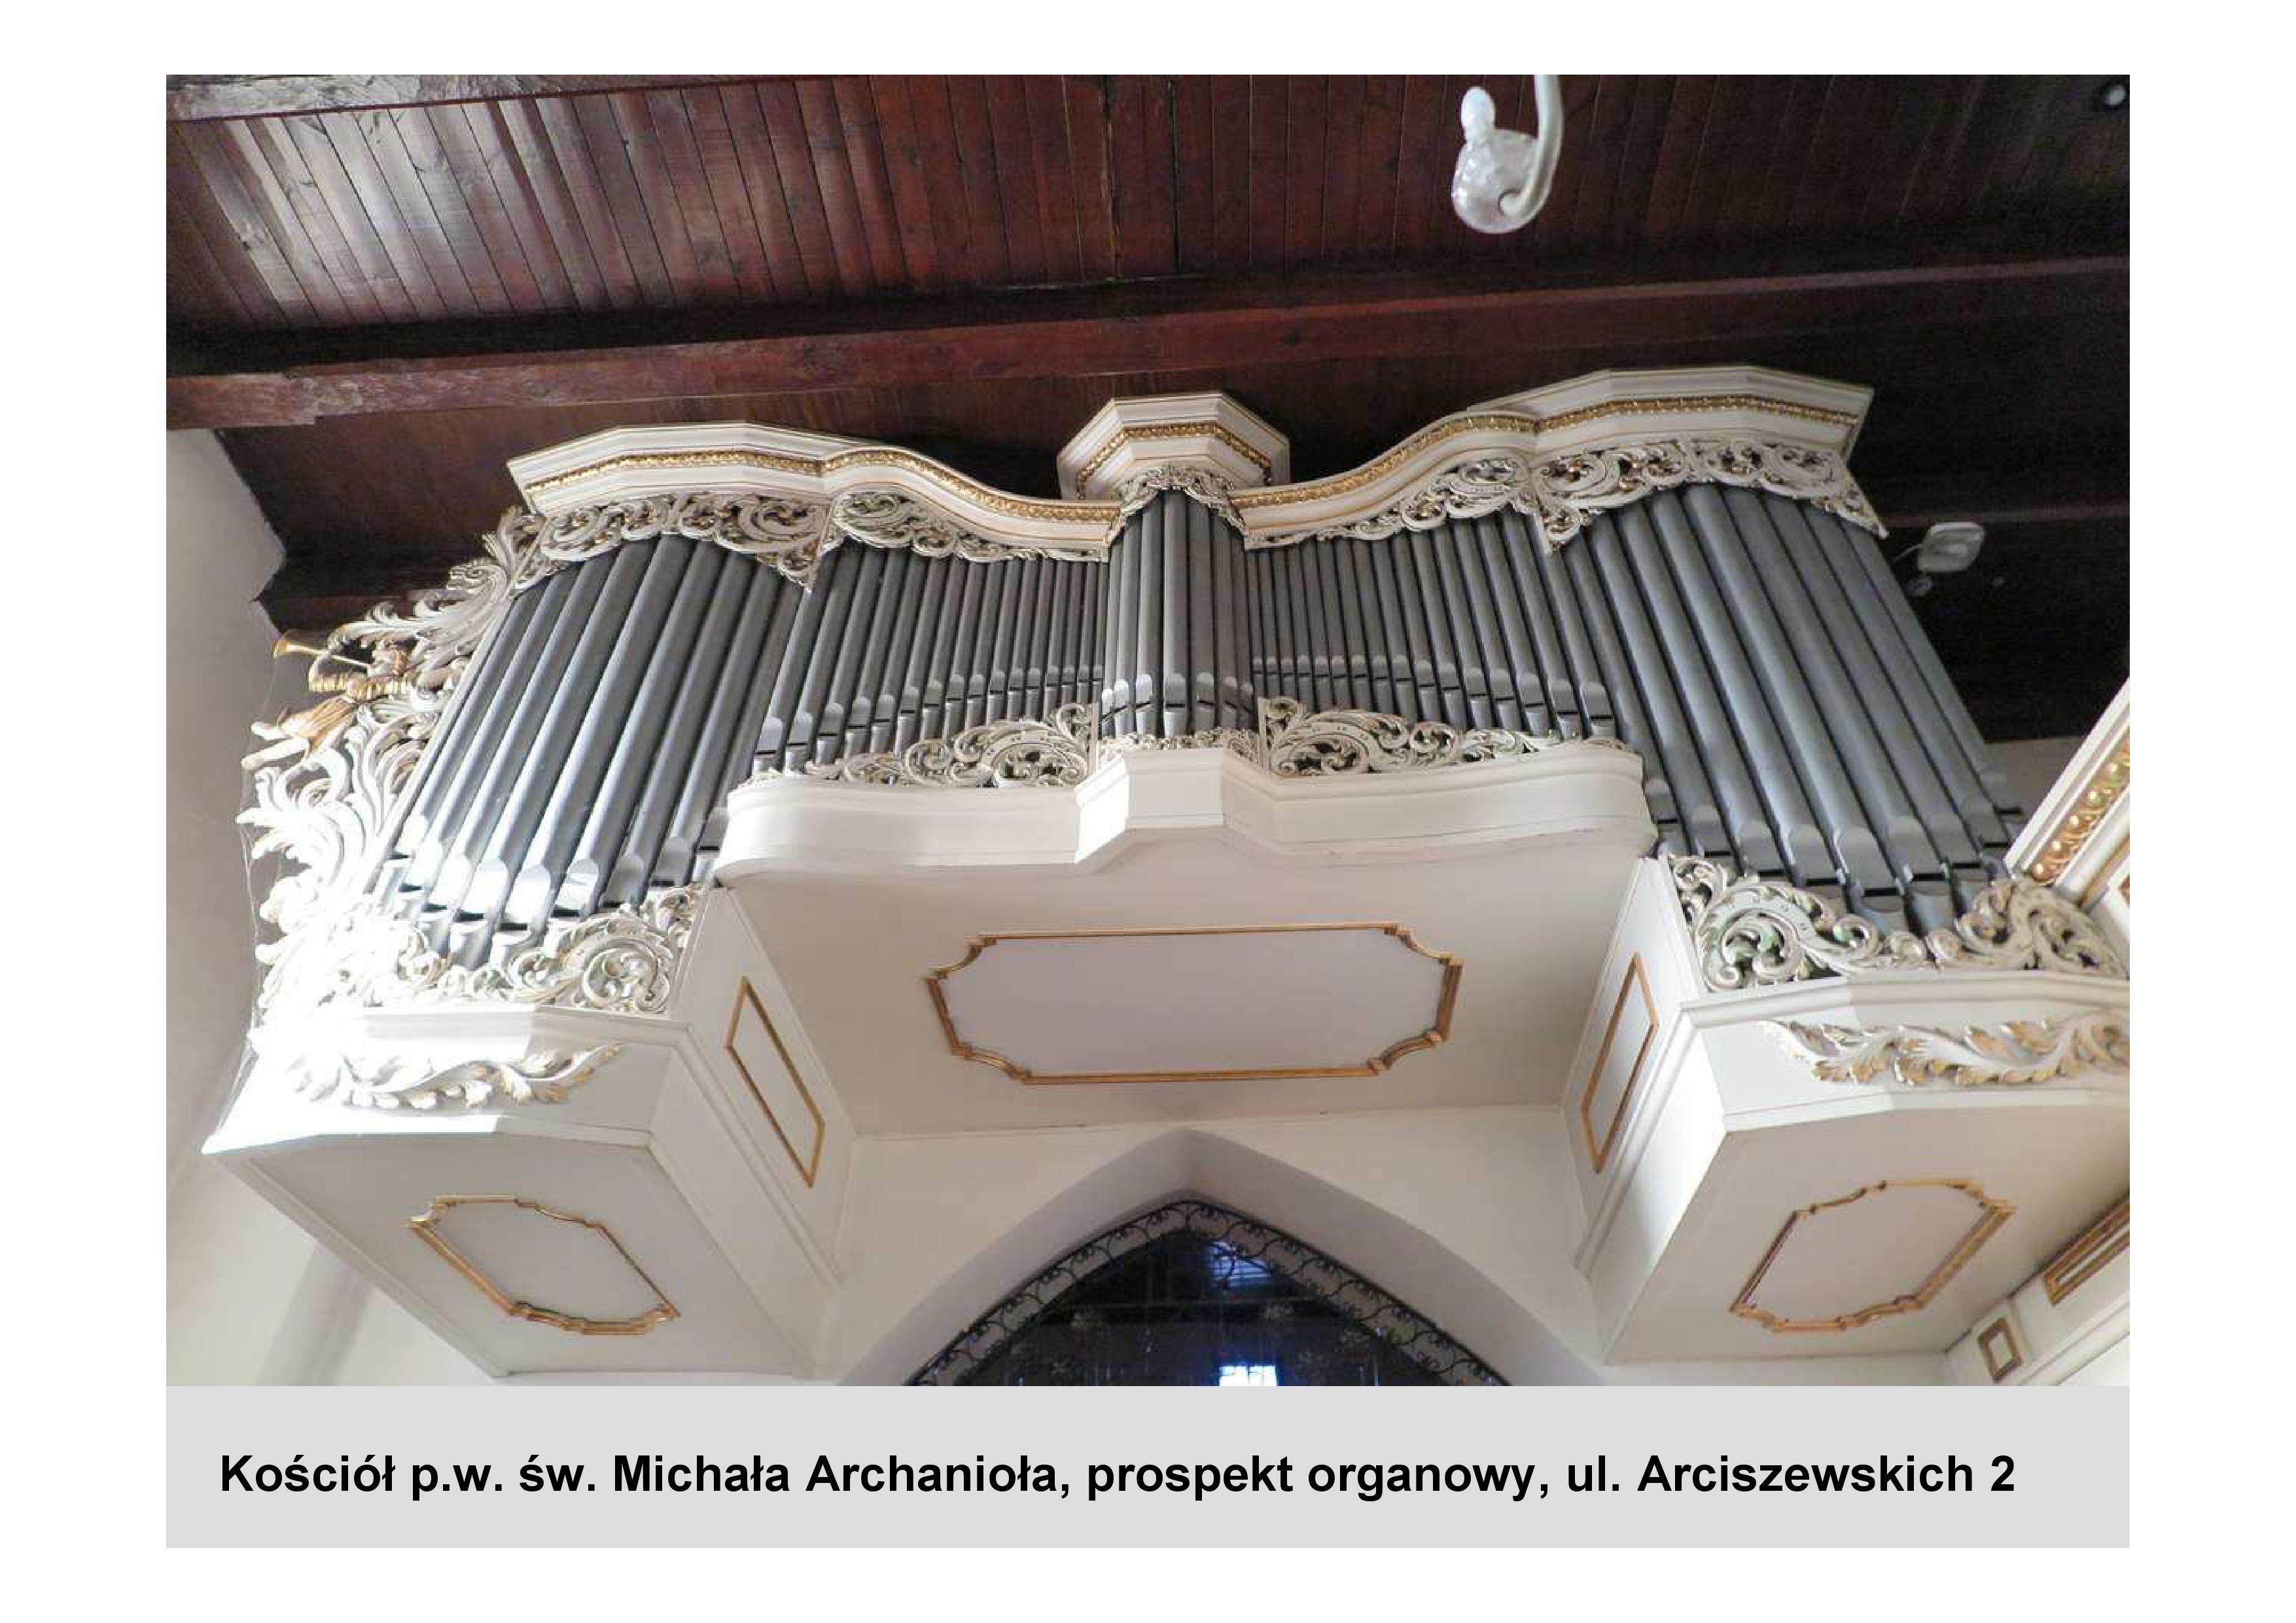 Kościół p. w. św. Michała Archanioła. Tu wyremontowany zostanie historyczny prospekt organowy, fot. materiały prasowe